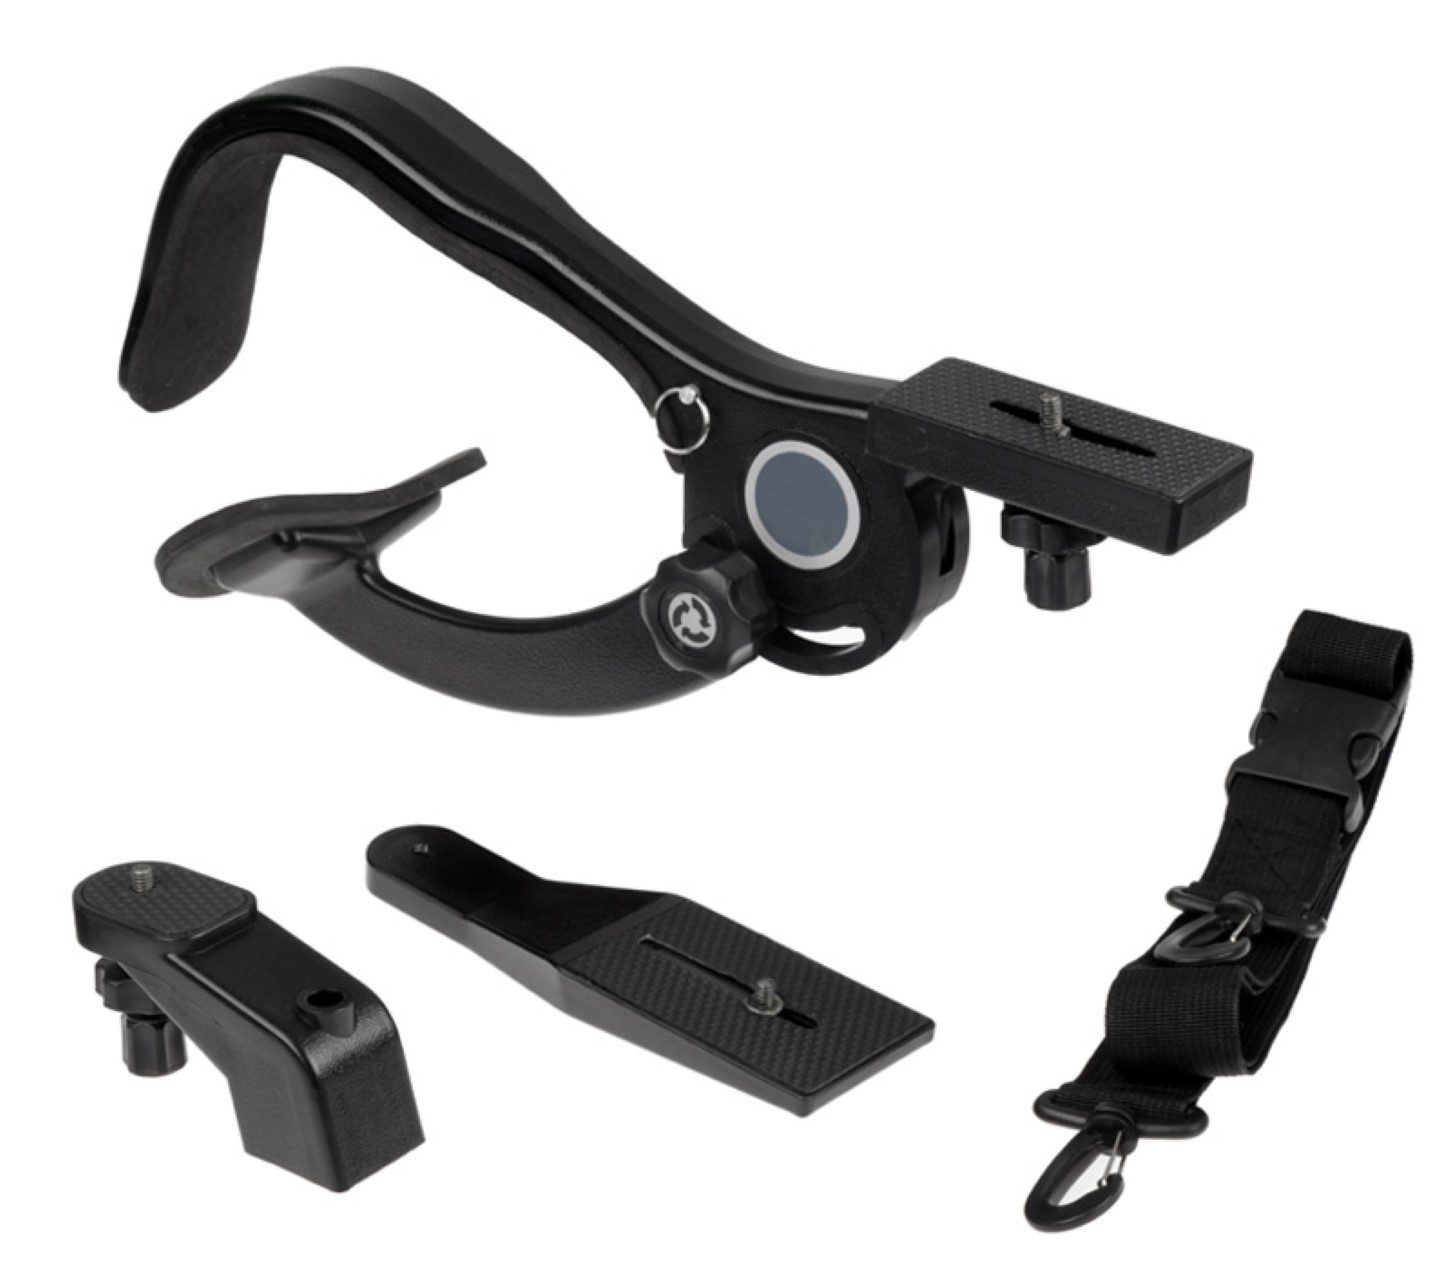 ayex Freihand-Schulterstativ für DSLR Kameras und Camcorder Für viel Bewegungsfreiheit, mit 1/4" Standard-Gewinde